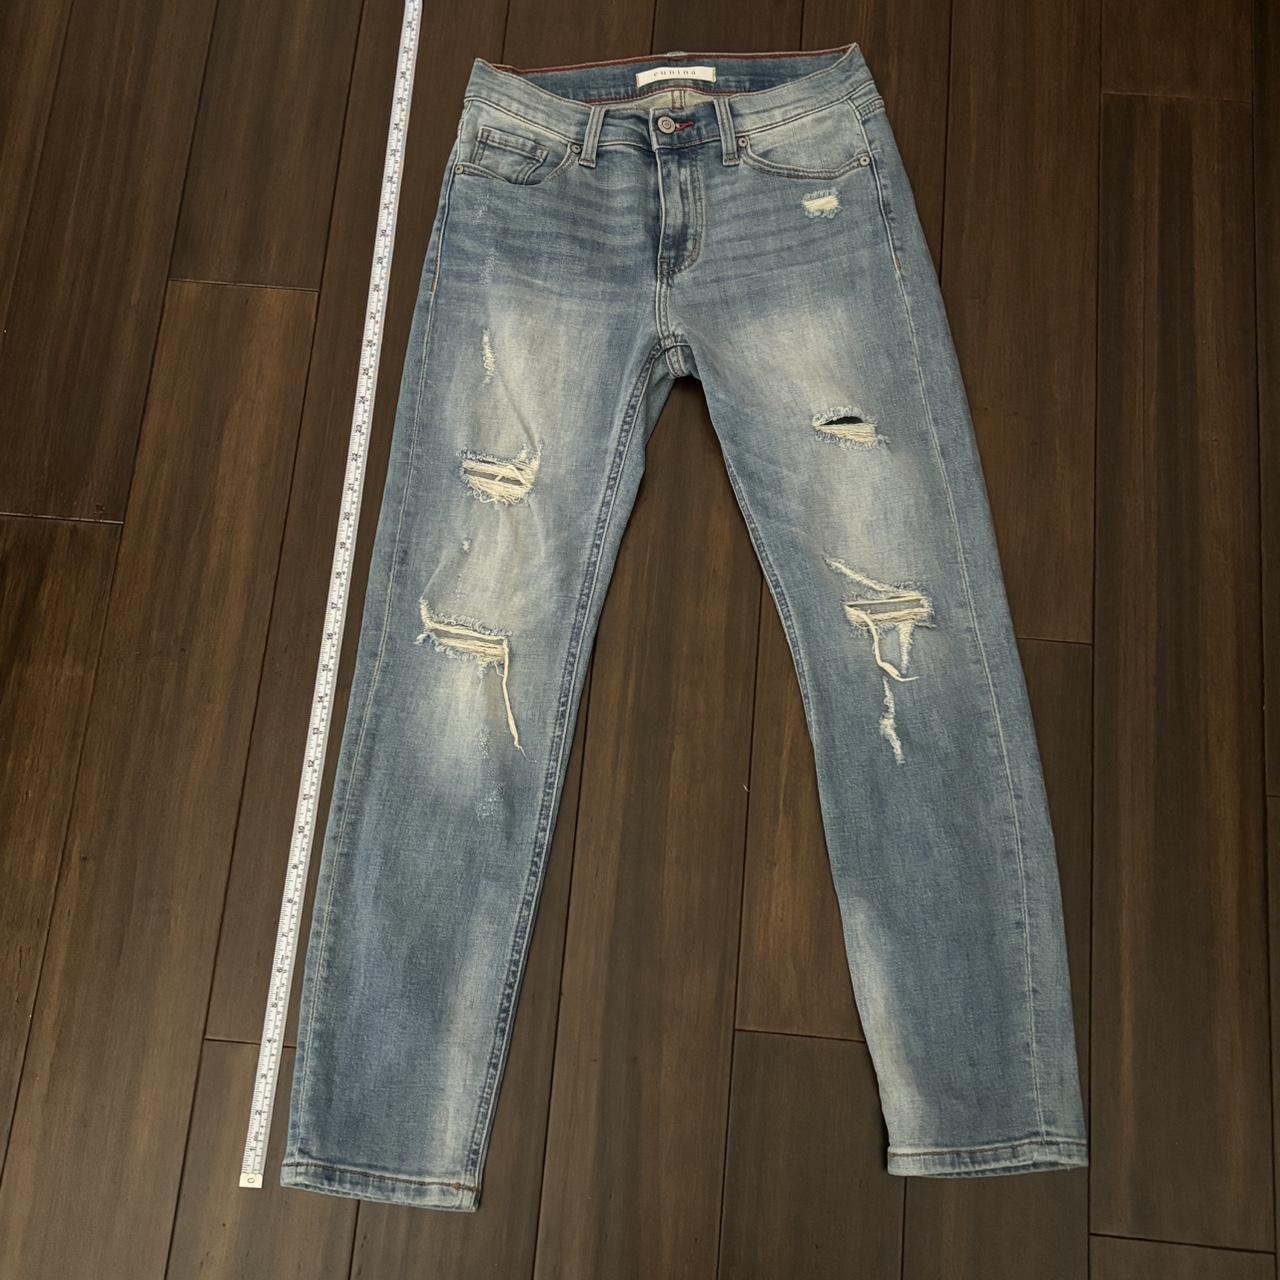 Low-rise girlfriend jeans